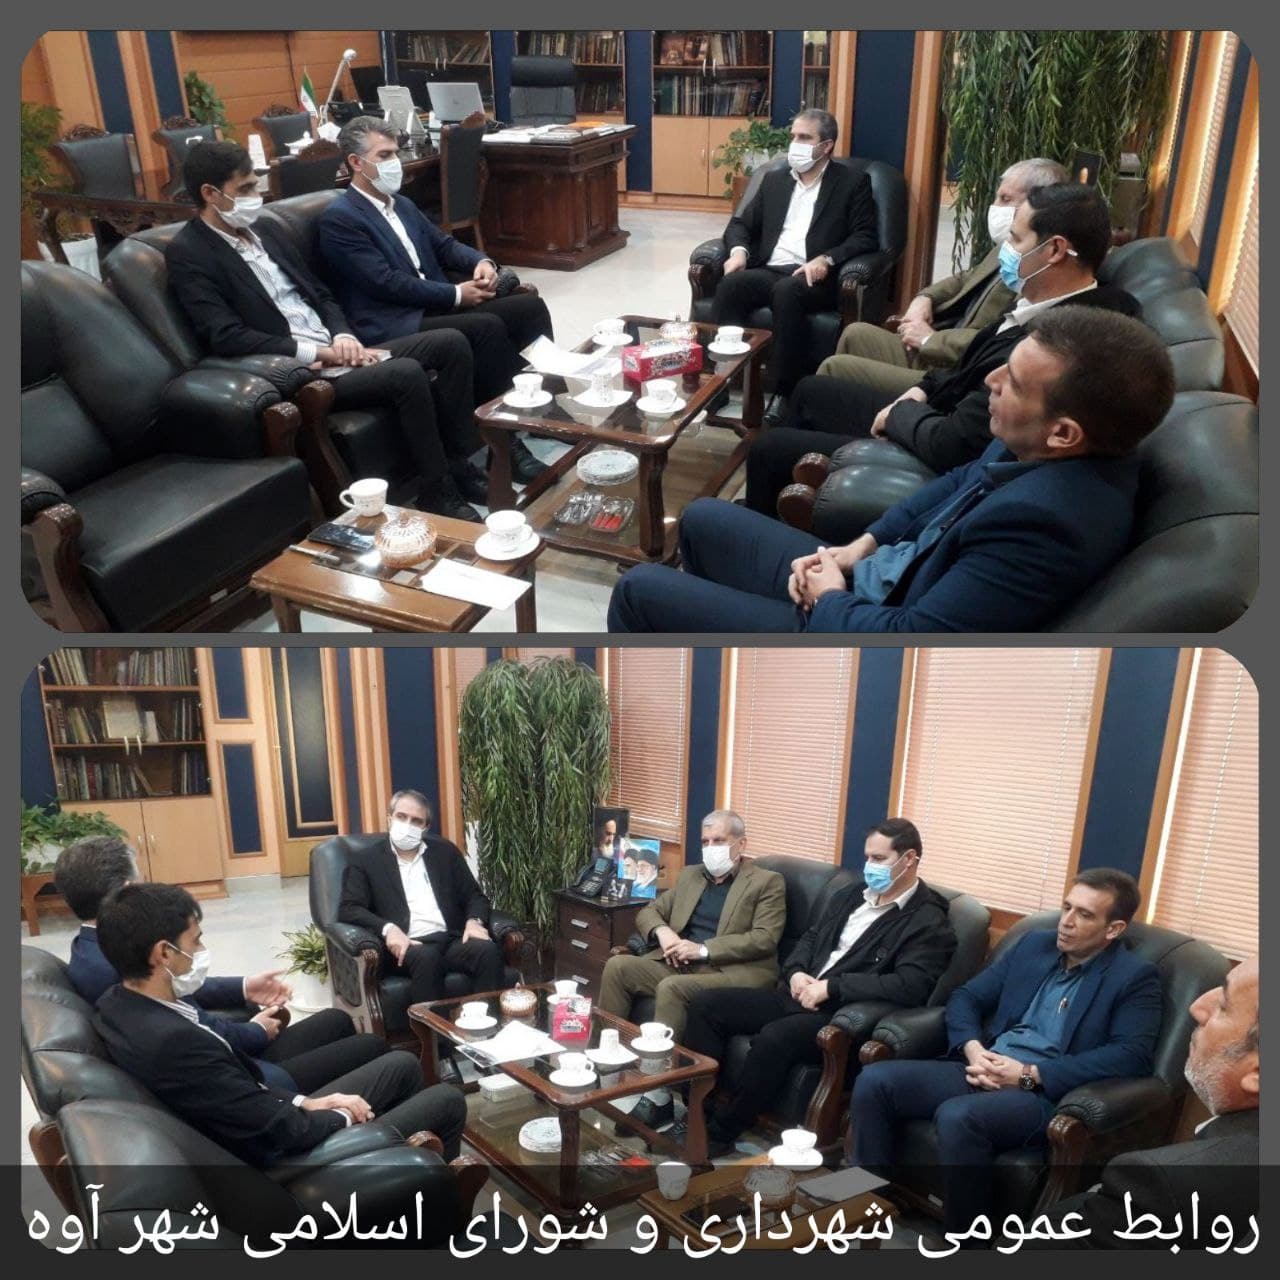 جلسه دیدار اعضای شورای اسلامی و شهردار آوه با مهندس الیاسی فرماندار شهرستان ساوه